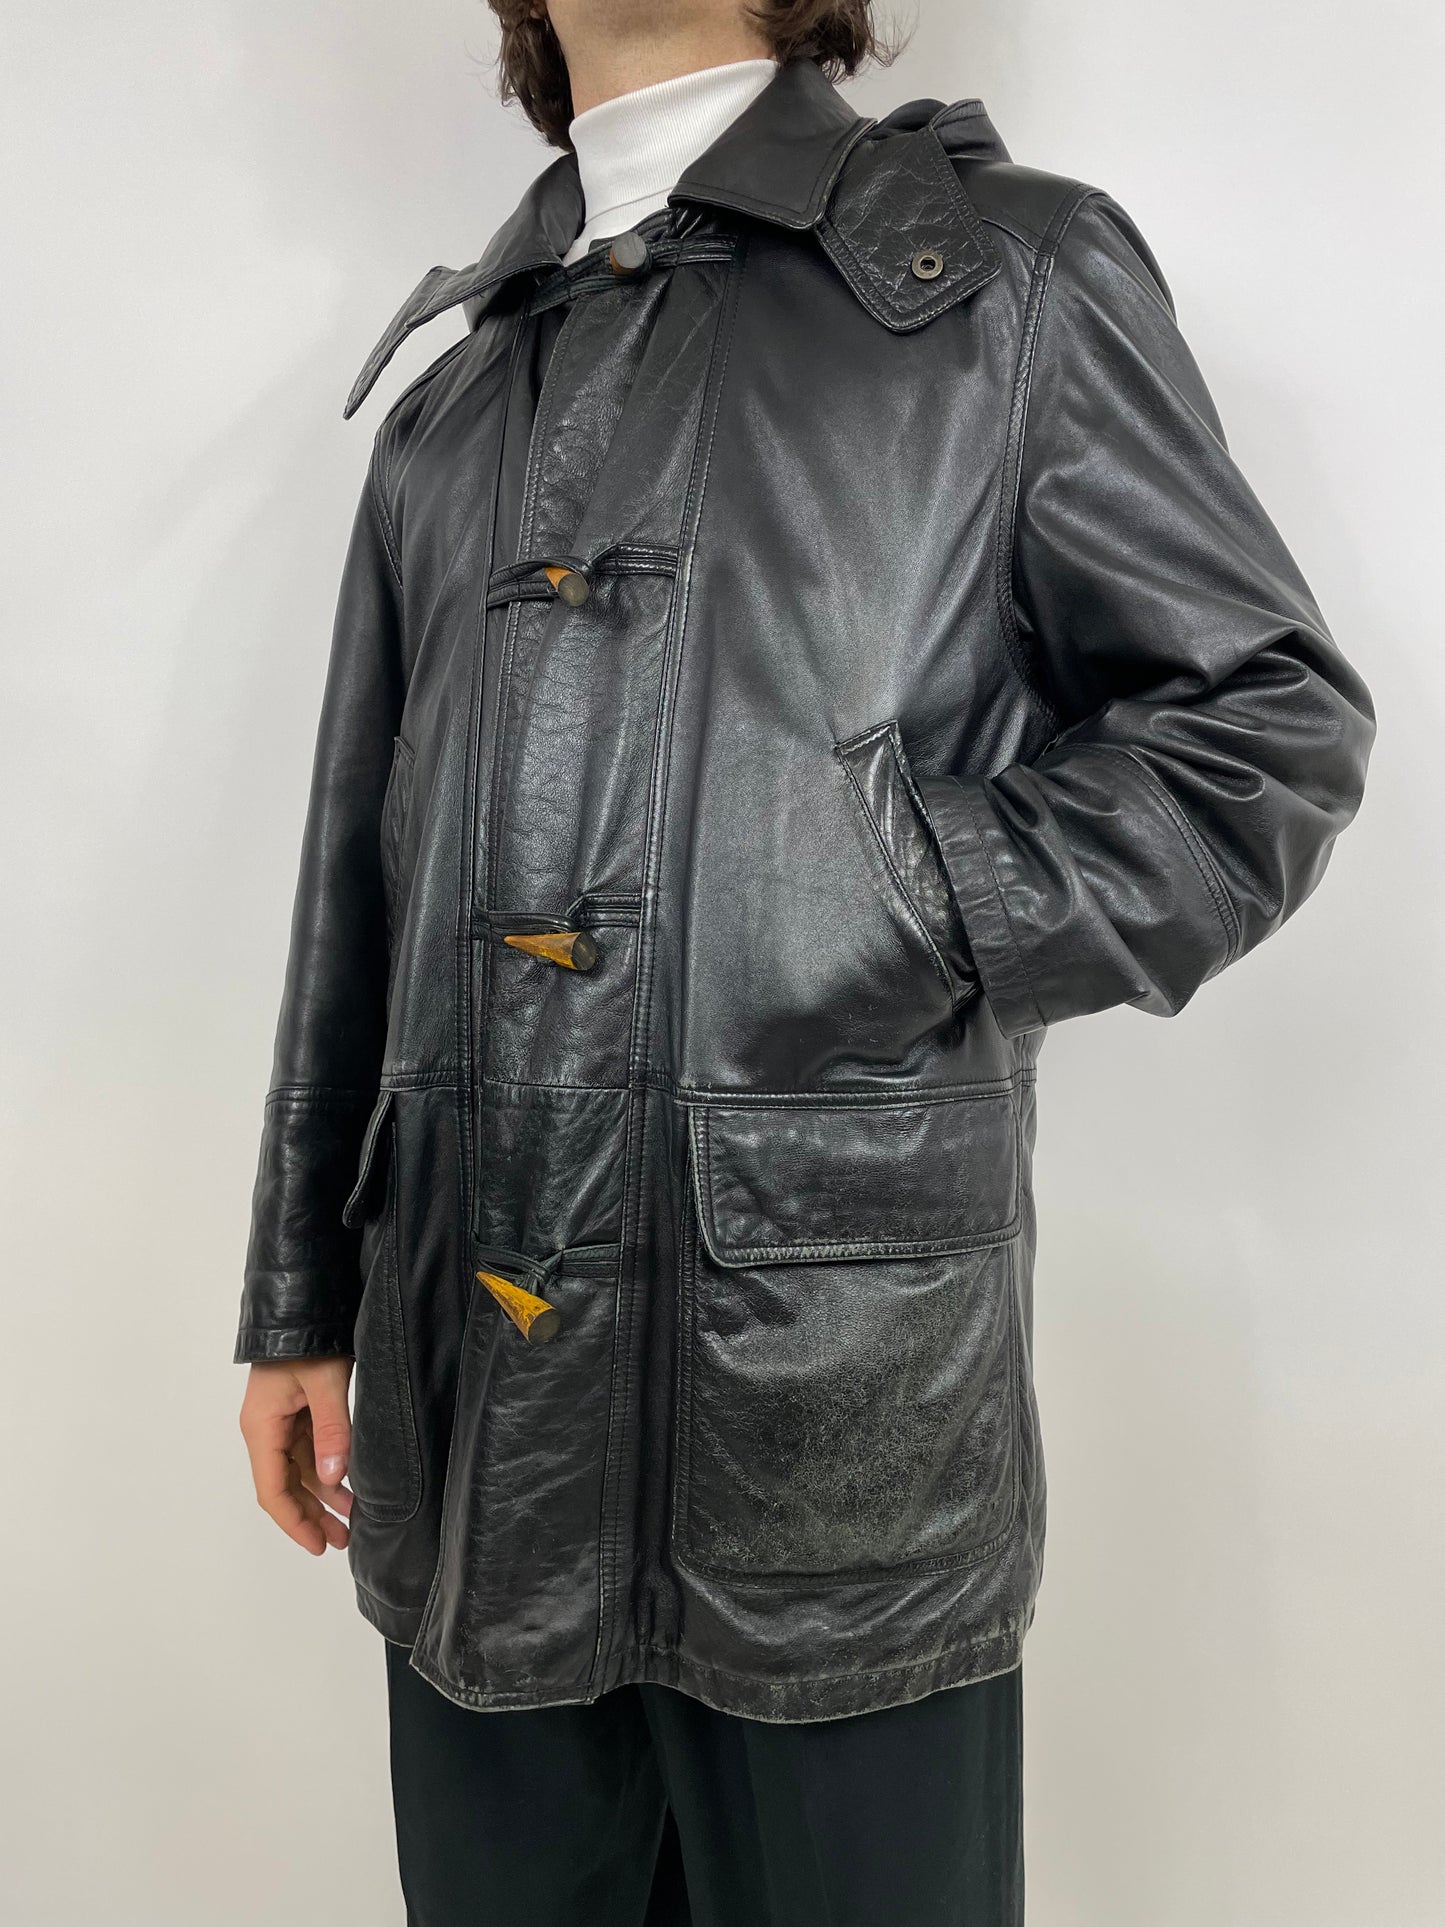 Leather Jacket Pierre Cardin 1980